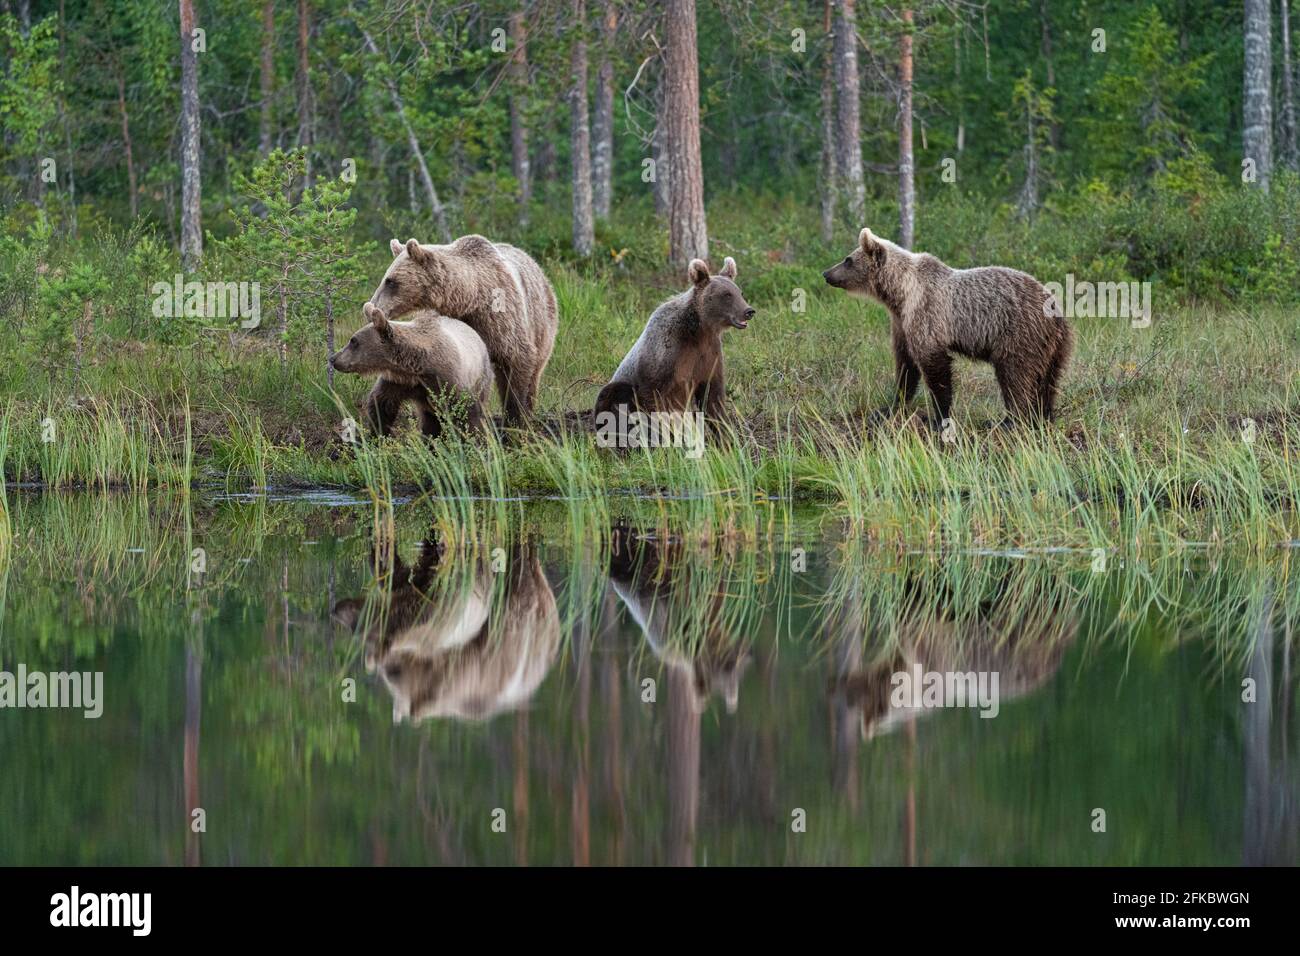 Eurasian brown bear (Ursus arctos arctos) and cubs, Kuhmo, Finland, Europe Stock Photo